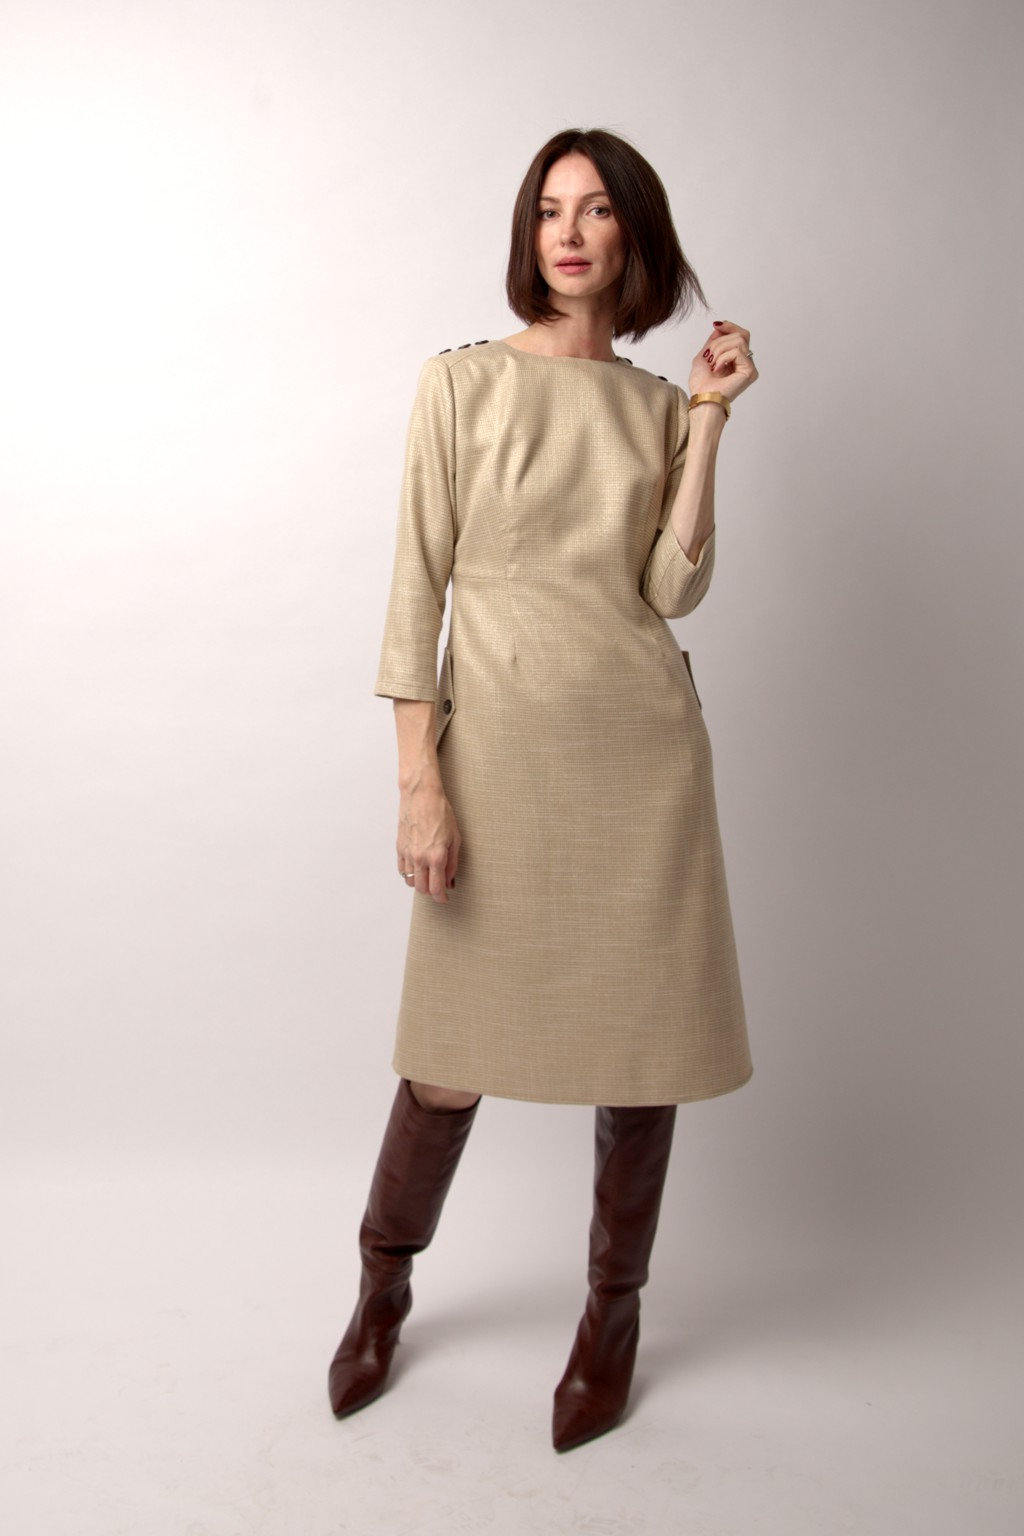 Платье «Миа» бежево-молочный цвета, размер 42-44